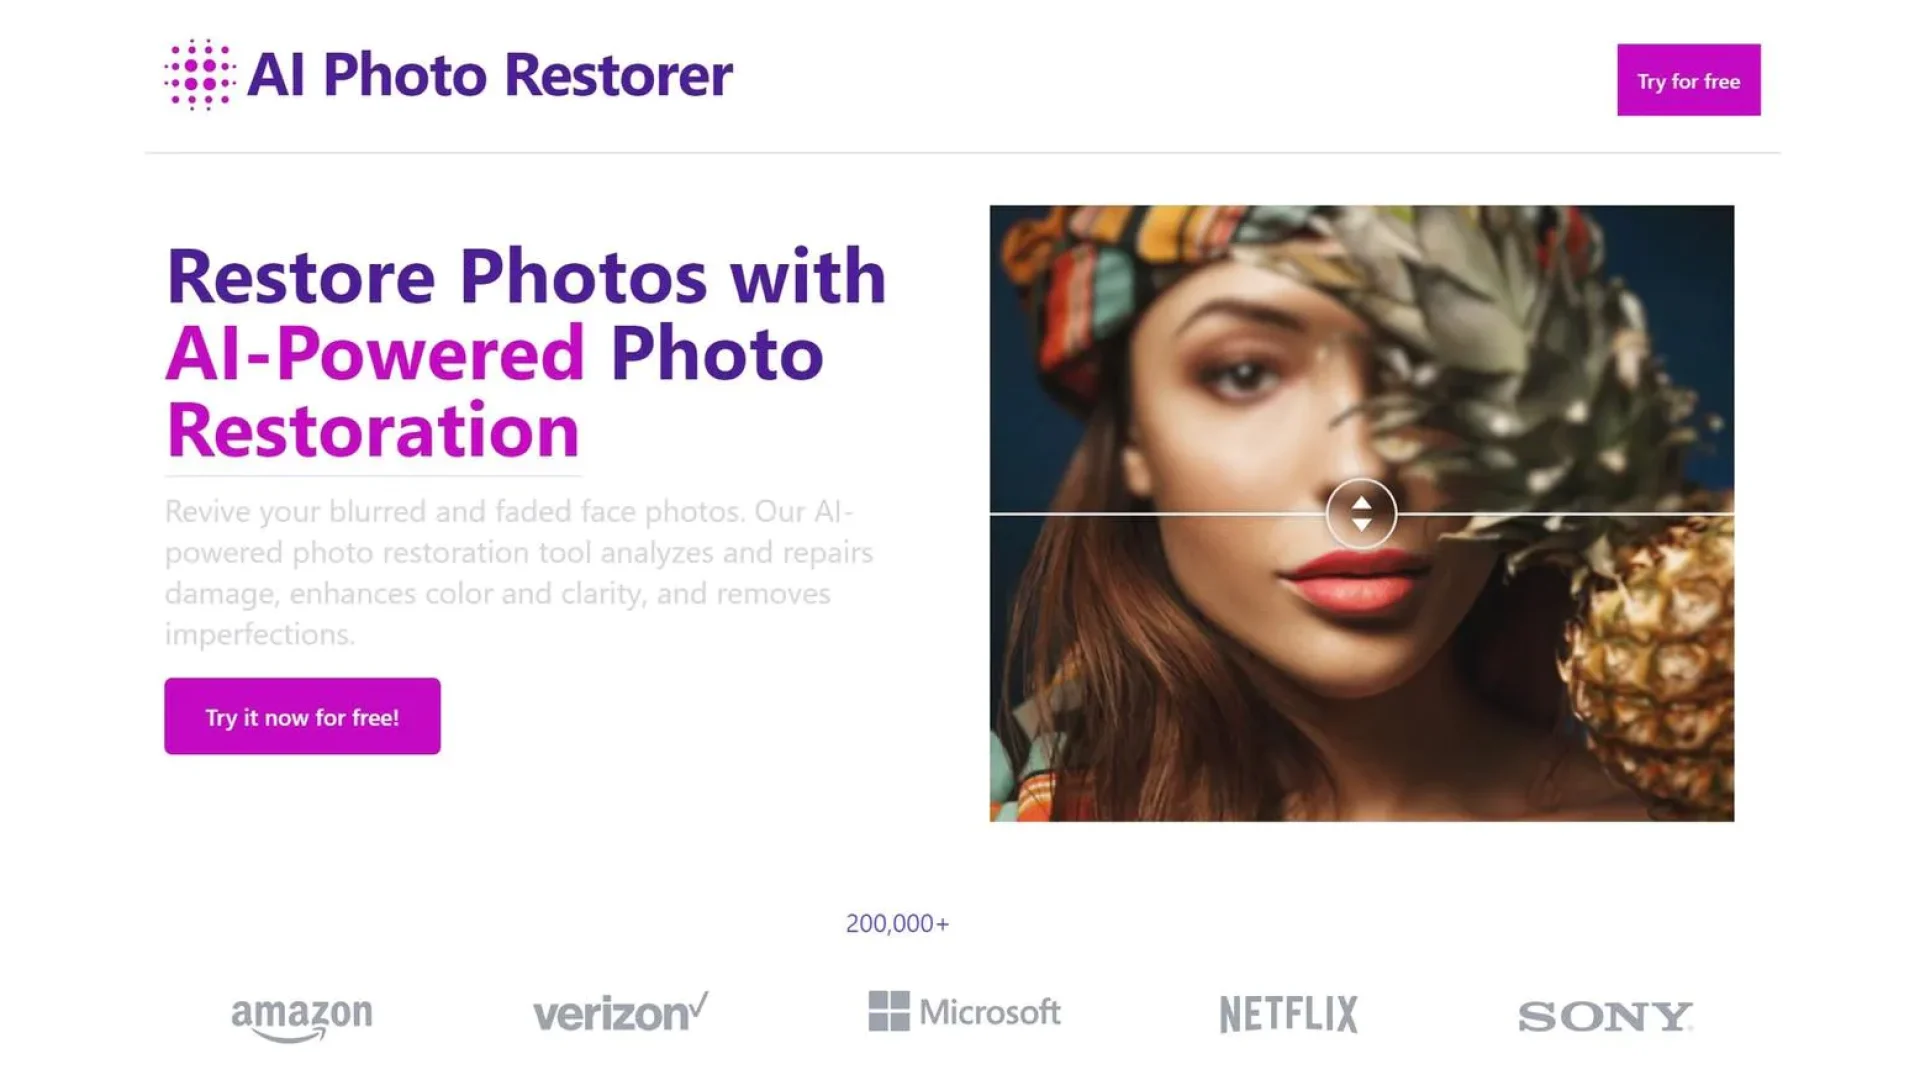 AI Photo Restorer